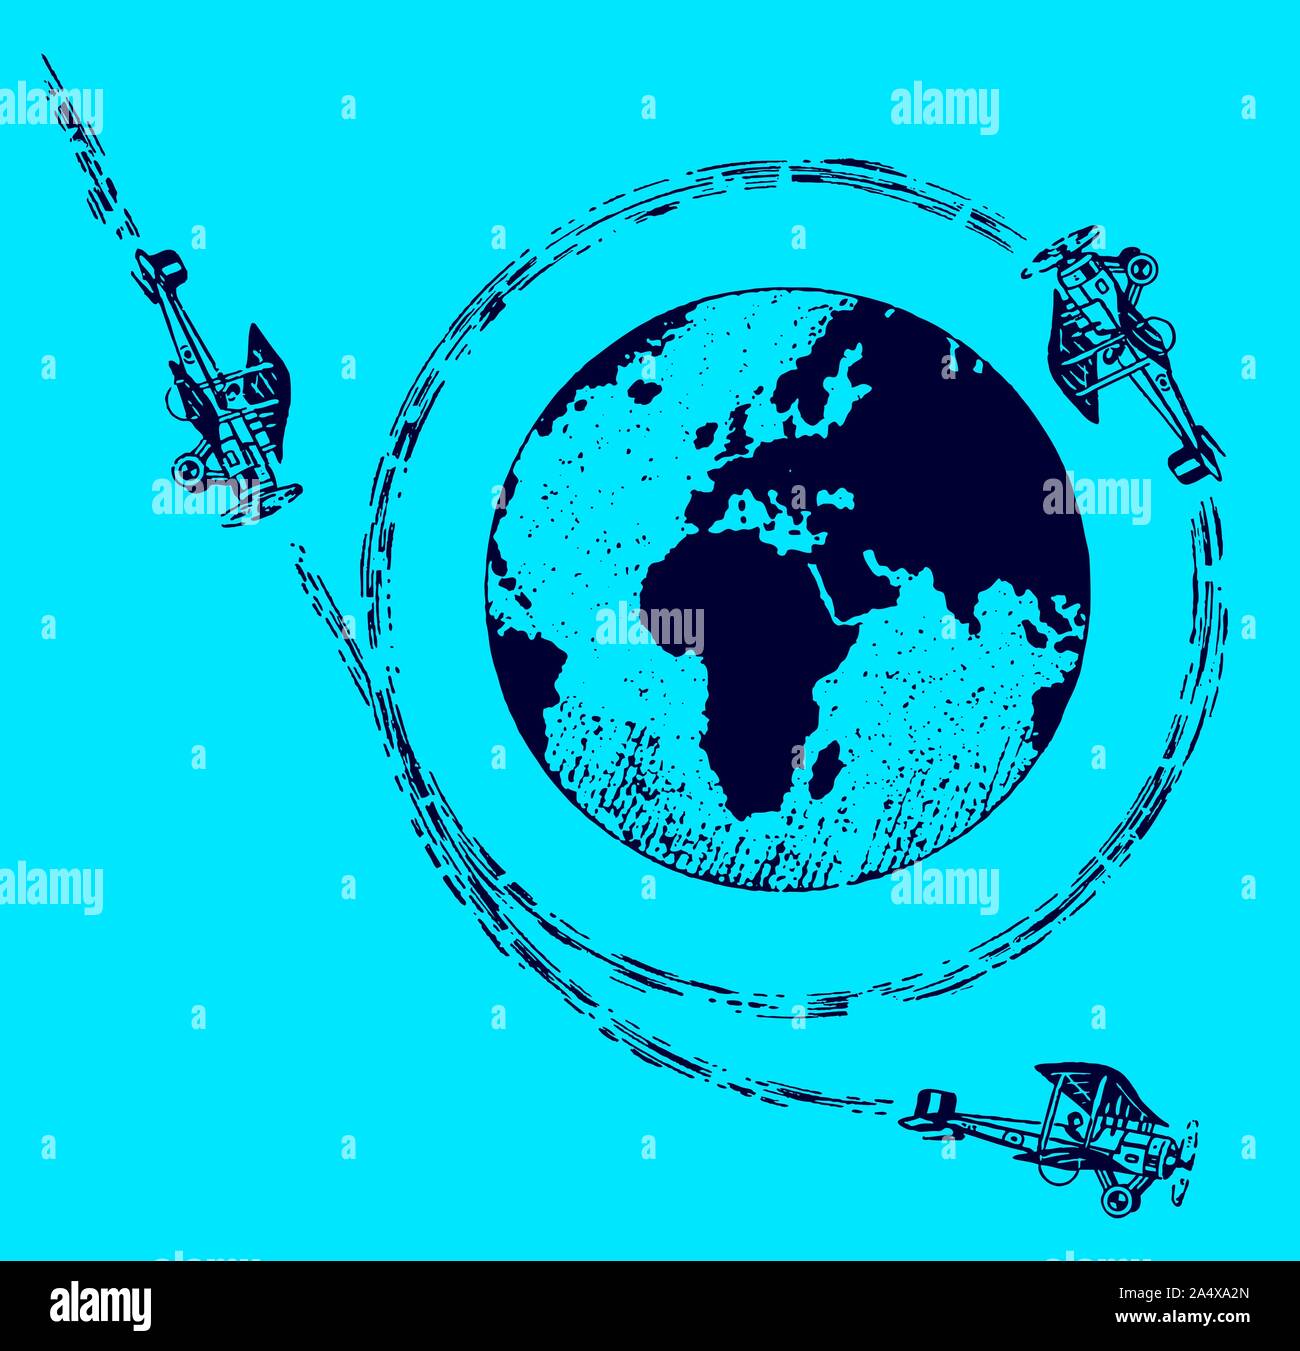 Die drei historischen Doppeldecker Rundflug um die Welt. Abbildung auf einem blauen Hintergrund Nach einer Lithographie aus dem frühen 20. Jahrhundert. Editierbare in La Stock Vektor